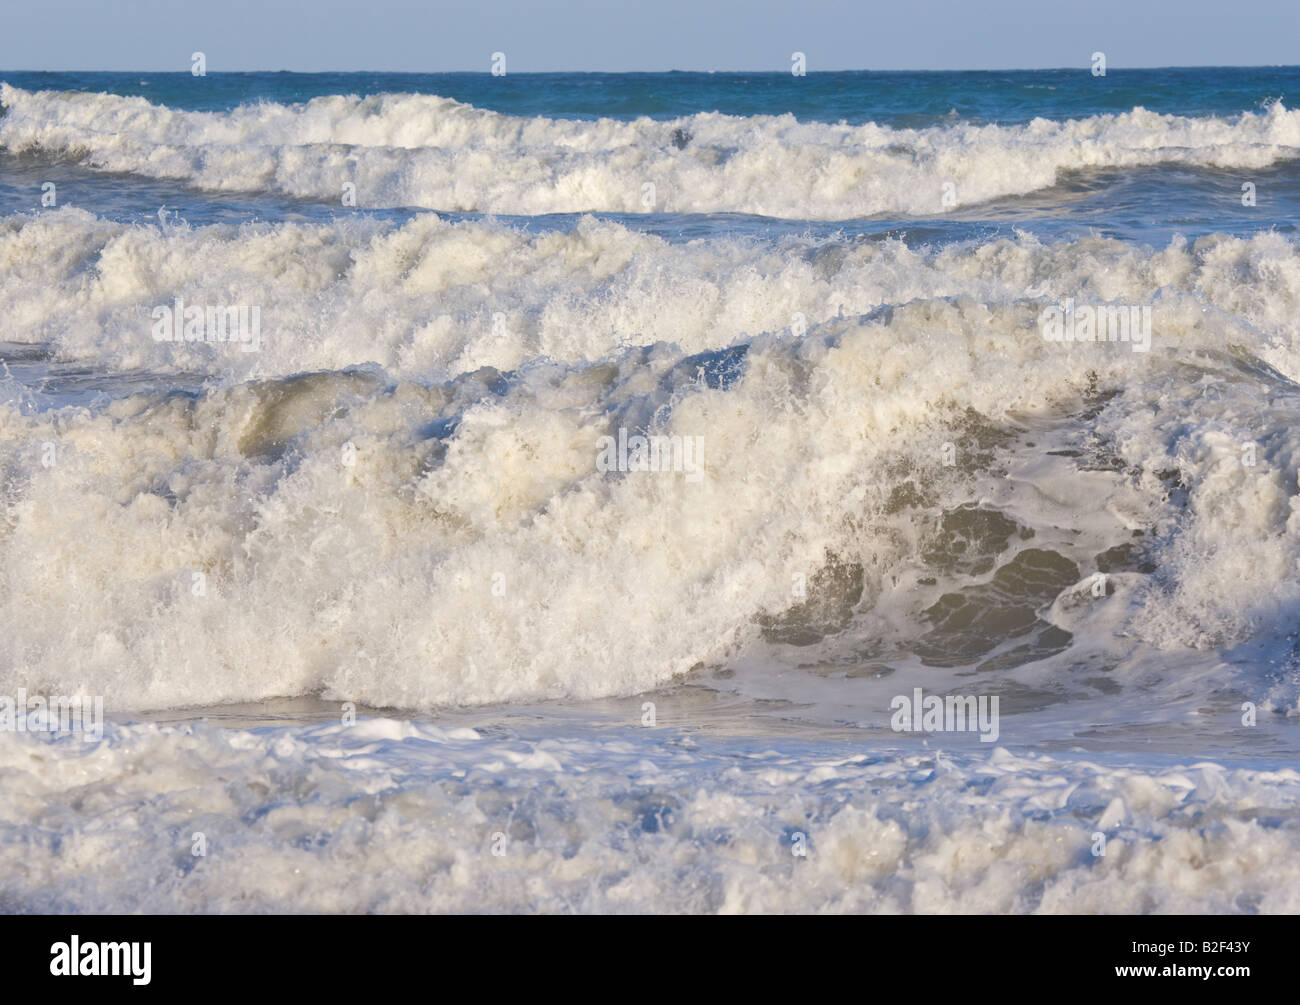 Wild waves crashing on shore Stock Photo